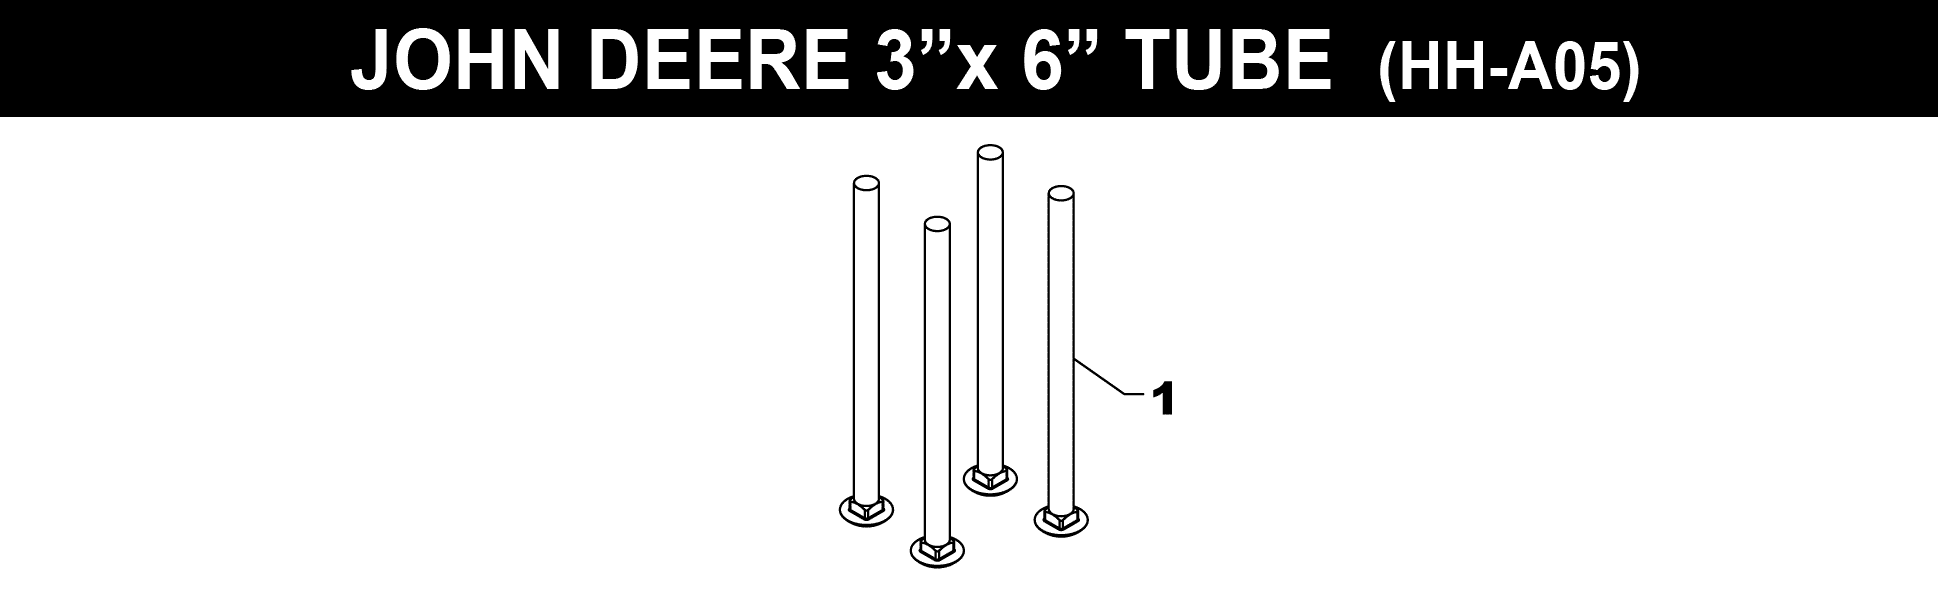 3" X 6" JOHN DEERE TUBE